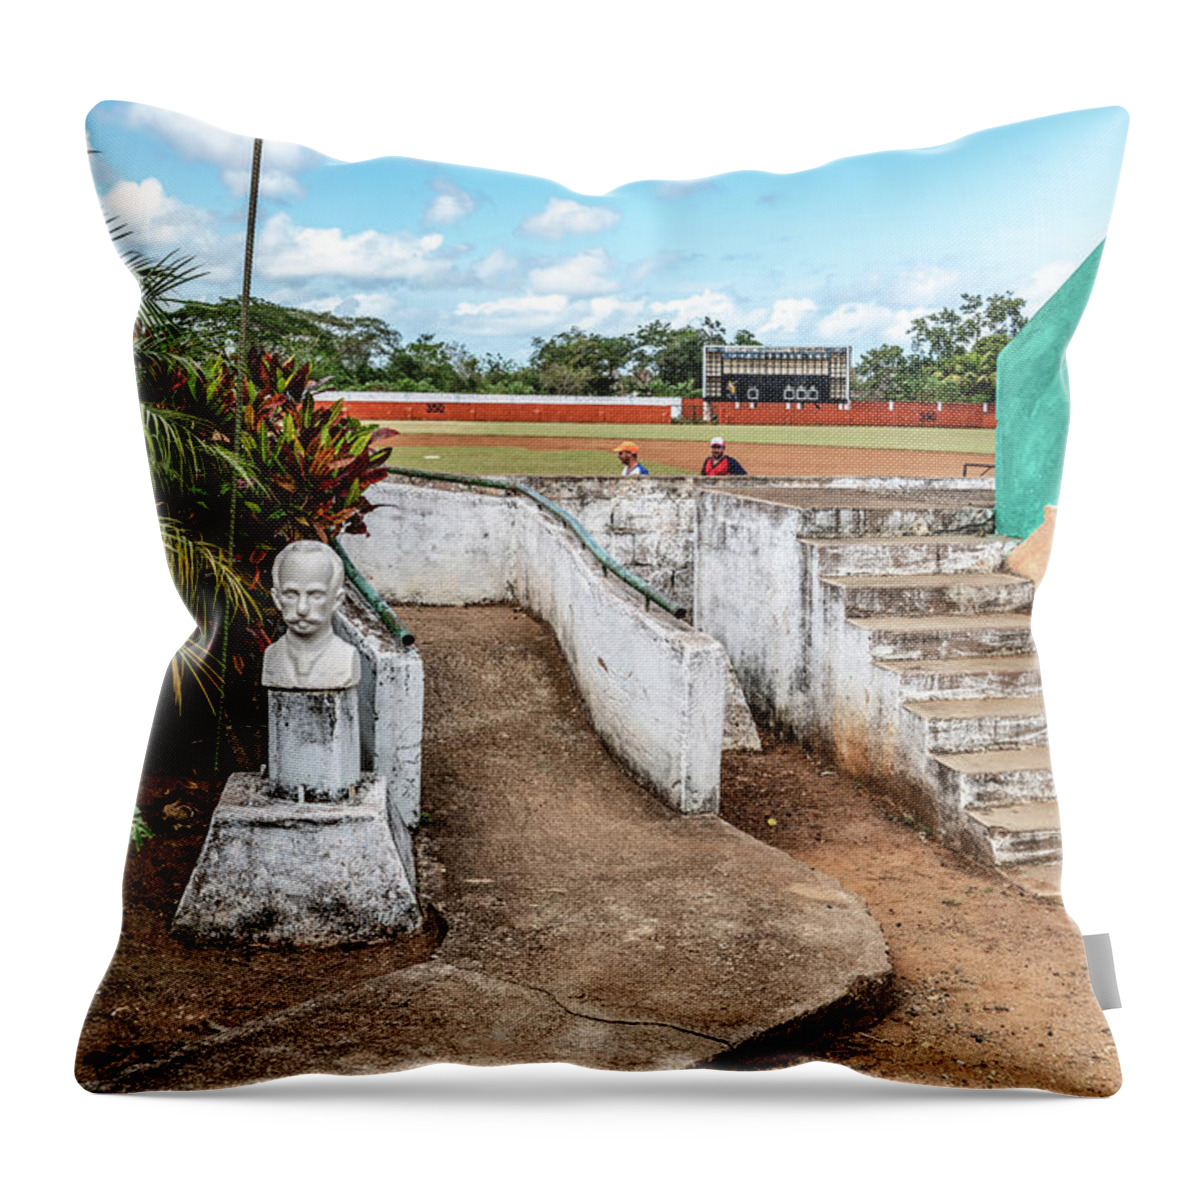 Cuban Baseball Field Throw Pillow featuring the photograph Cuban Baseball Field by Sharon Popek